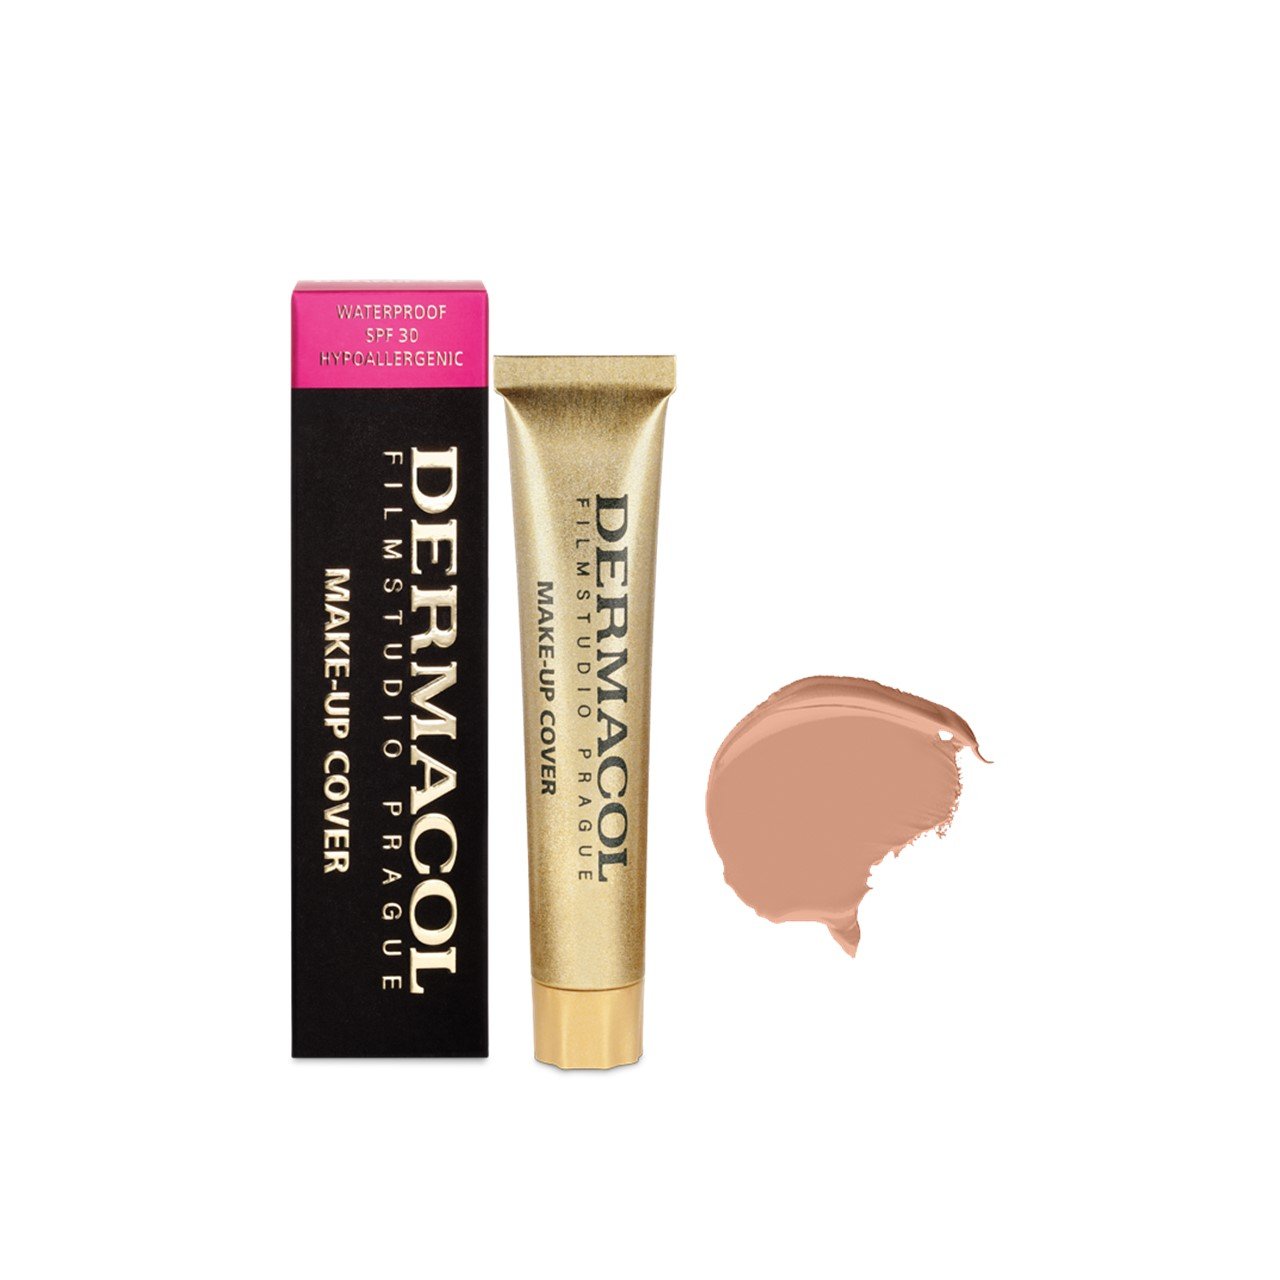 Dermacol Make-Up Cover Foundation SPF30 215 30g (1.06oz)